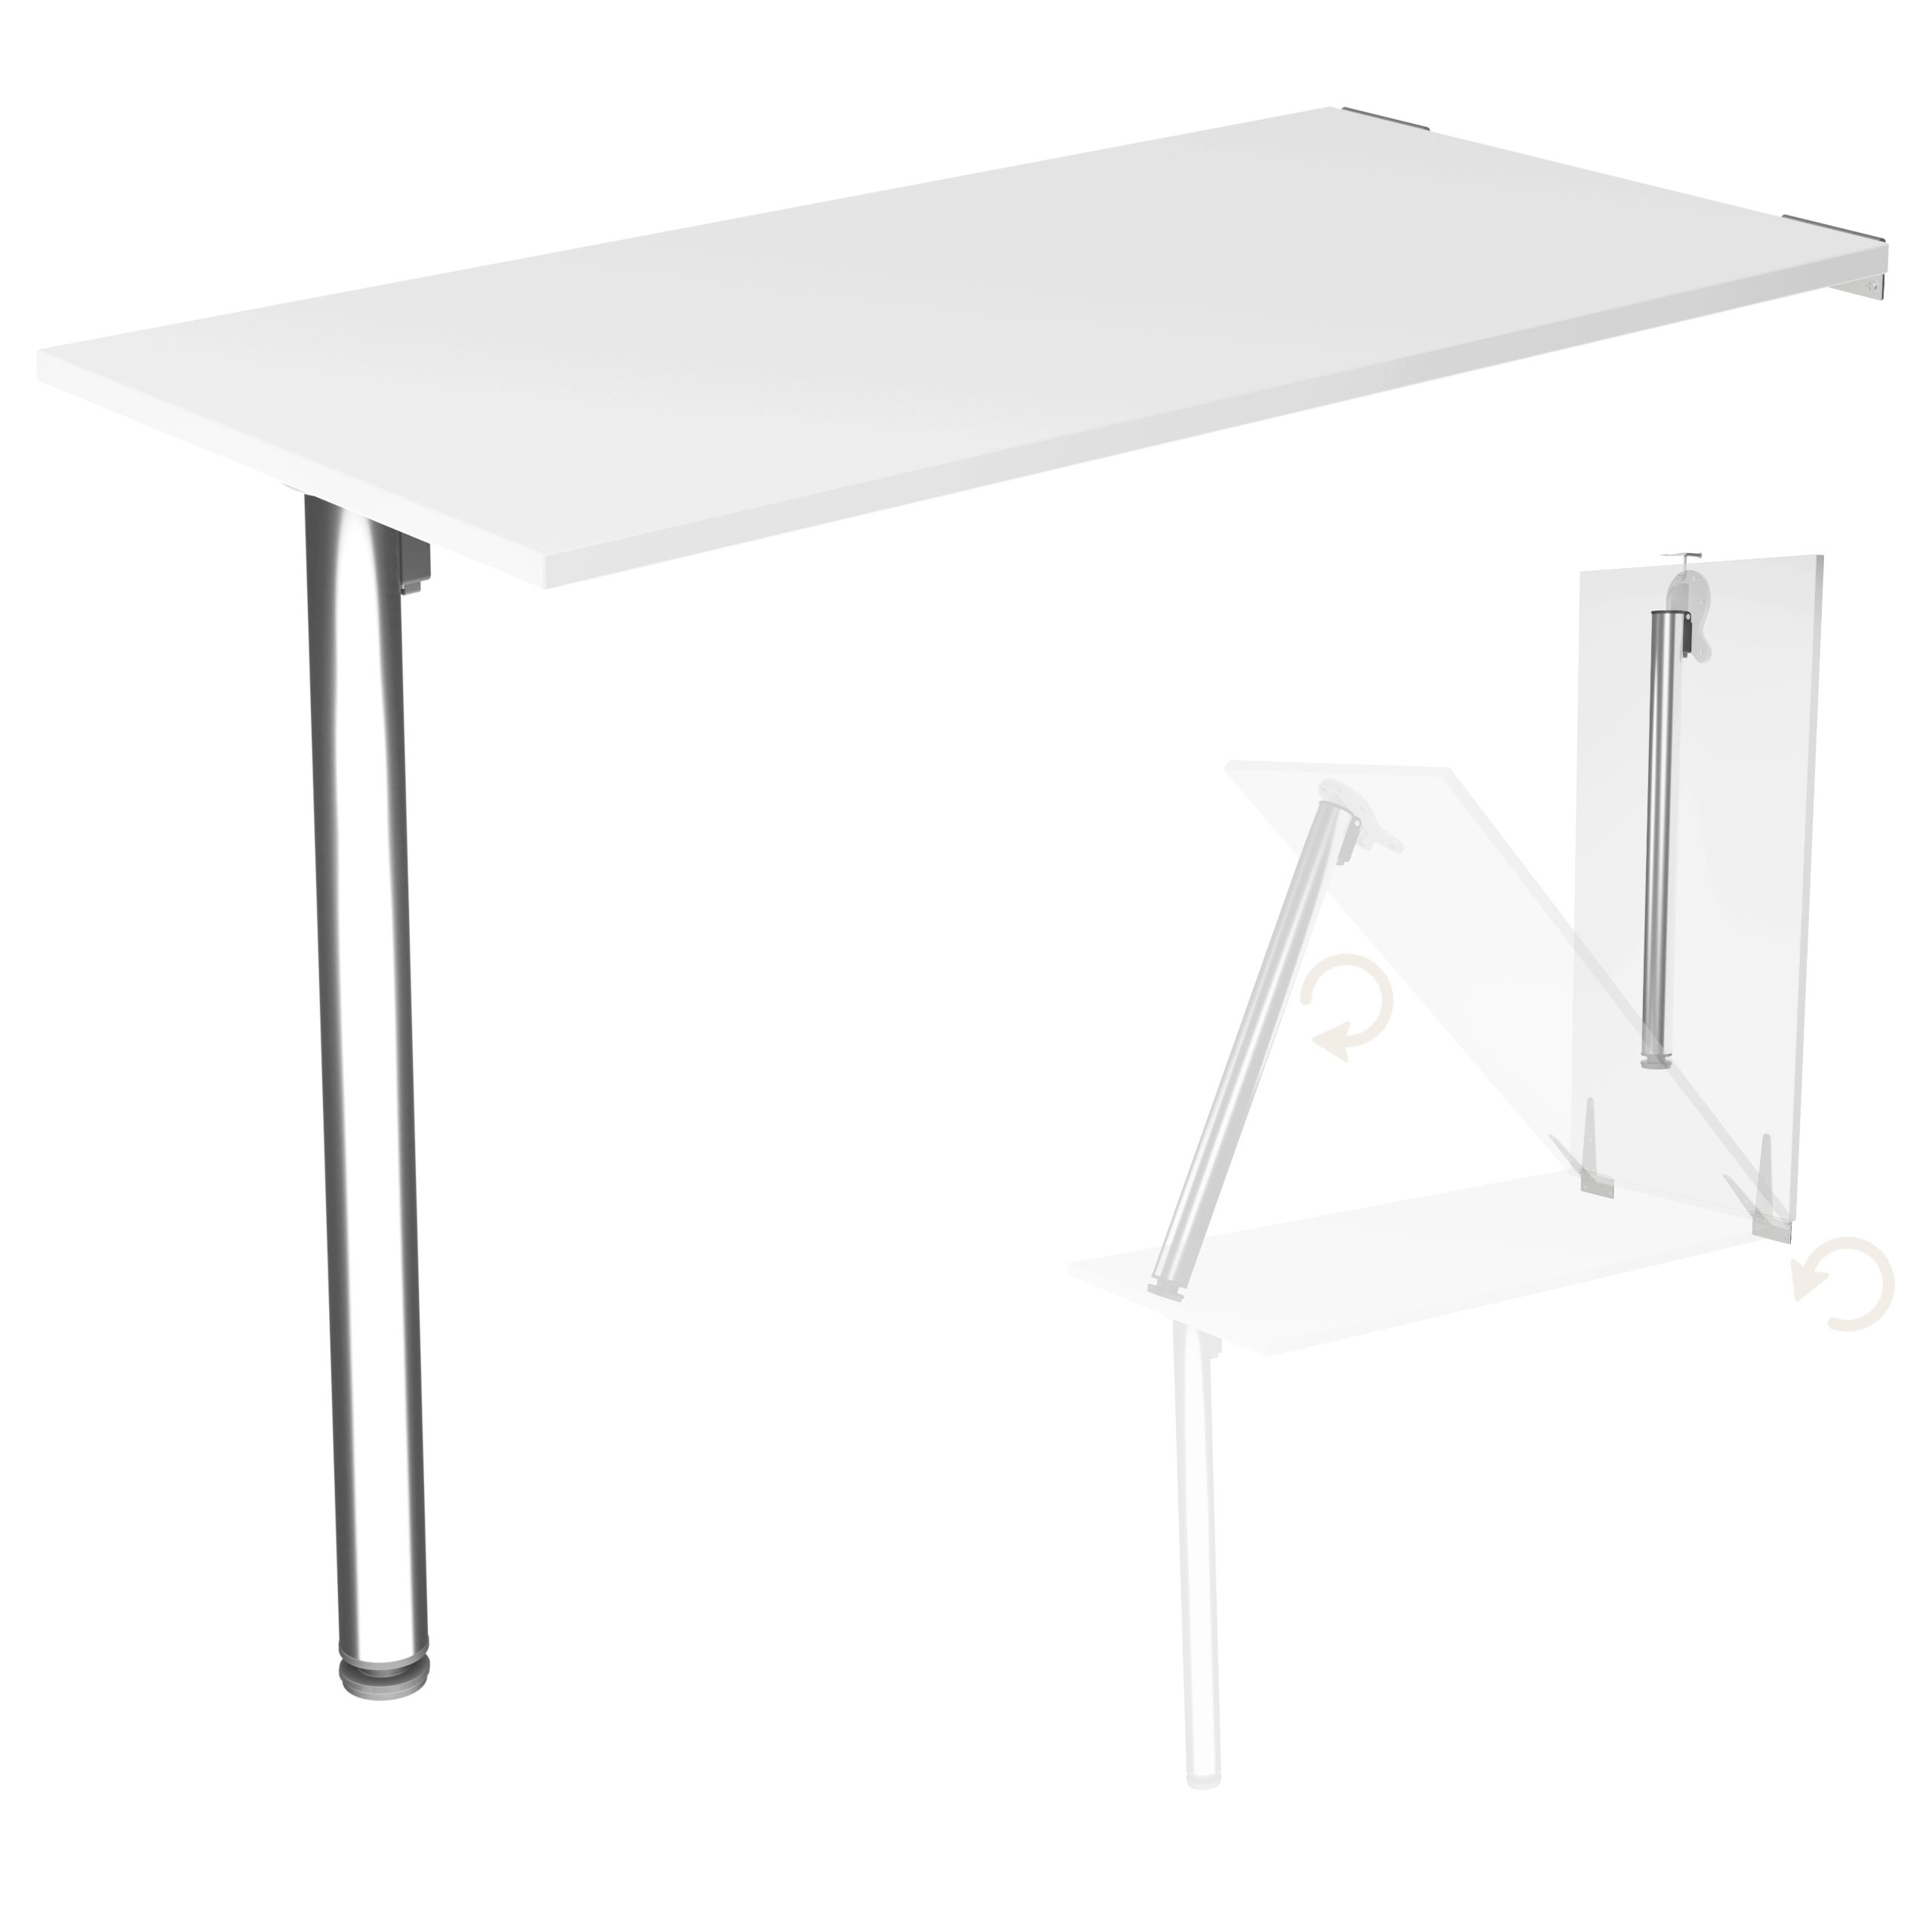 KDR Produktgestaltung Klapptisch Wandklapptisch Esstisch Küchentisch Schreibtisch  Wand Tisch Klappbar, Weiß